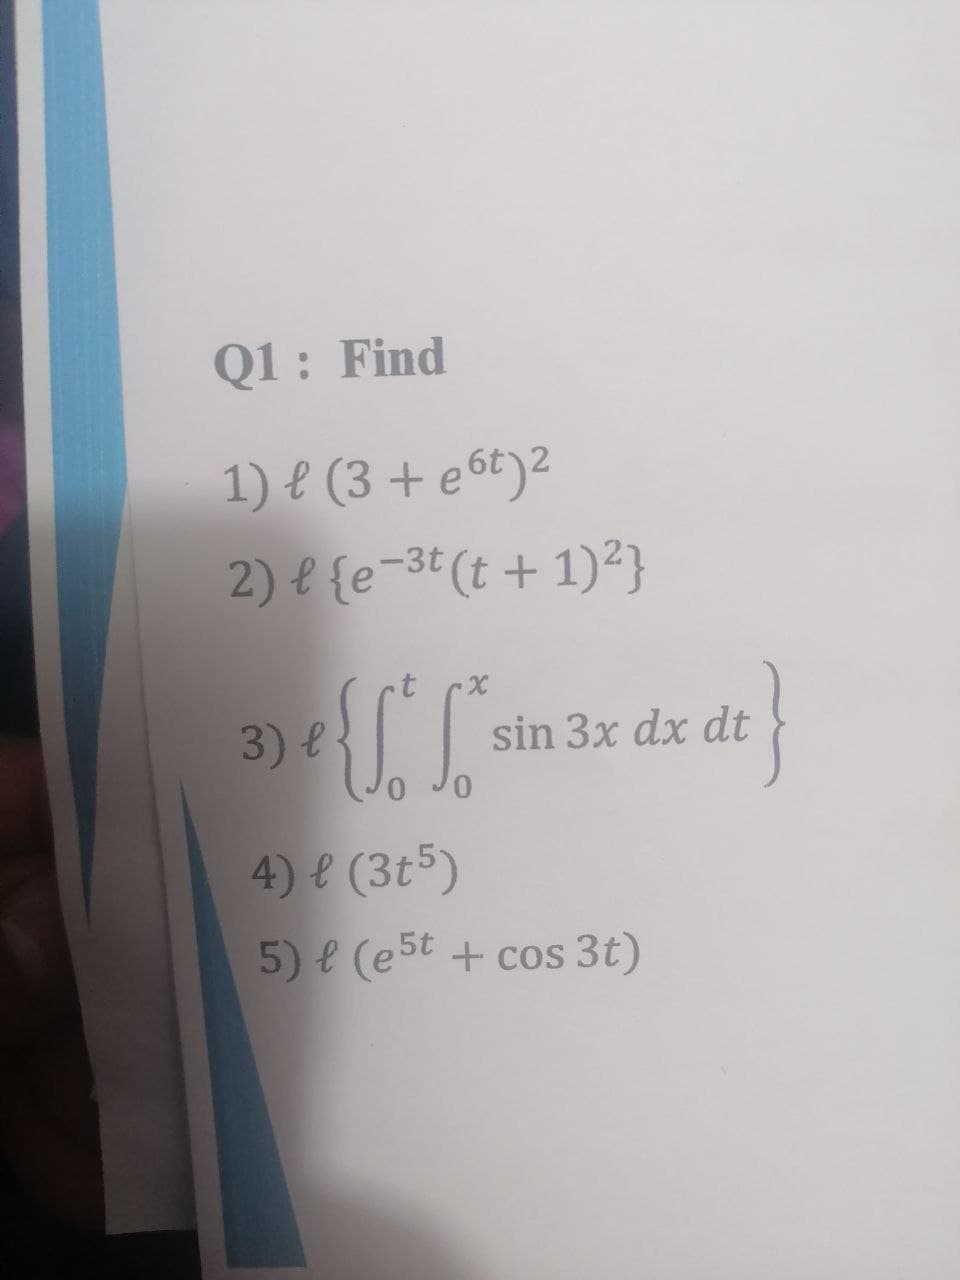 Q1: Find
1) e (3 + e 6t)2
2) e {e-3t (t + 1)²}
3) e
sin 3x dx dt
4) e (3t5)
5) e (est + cos 3t)
